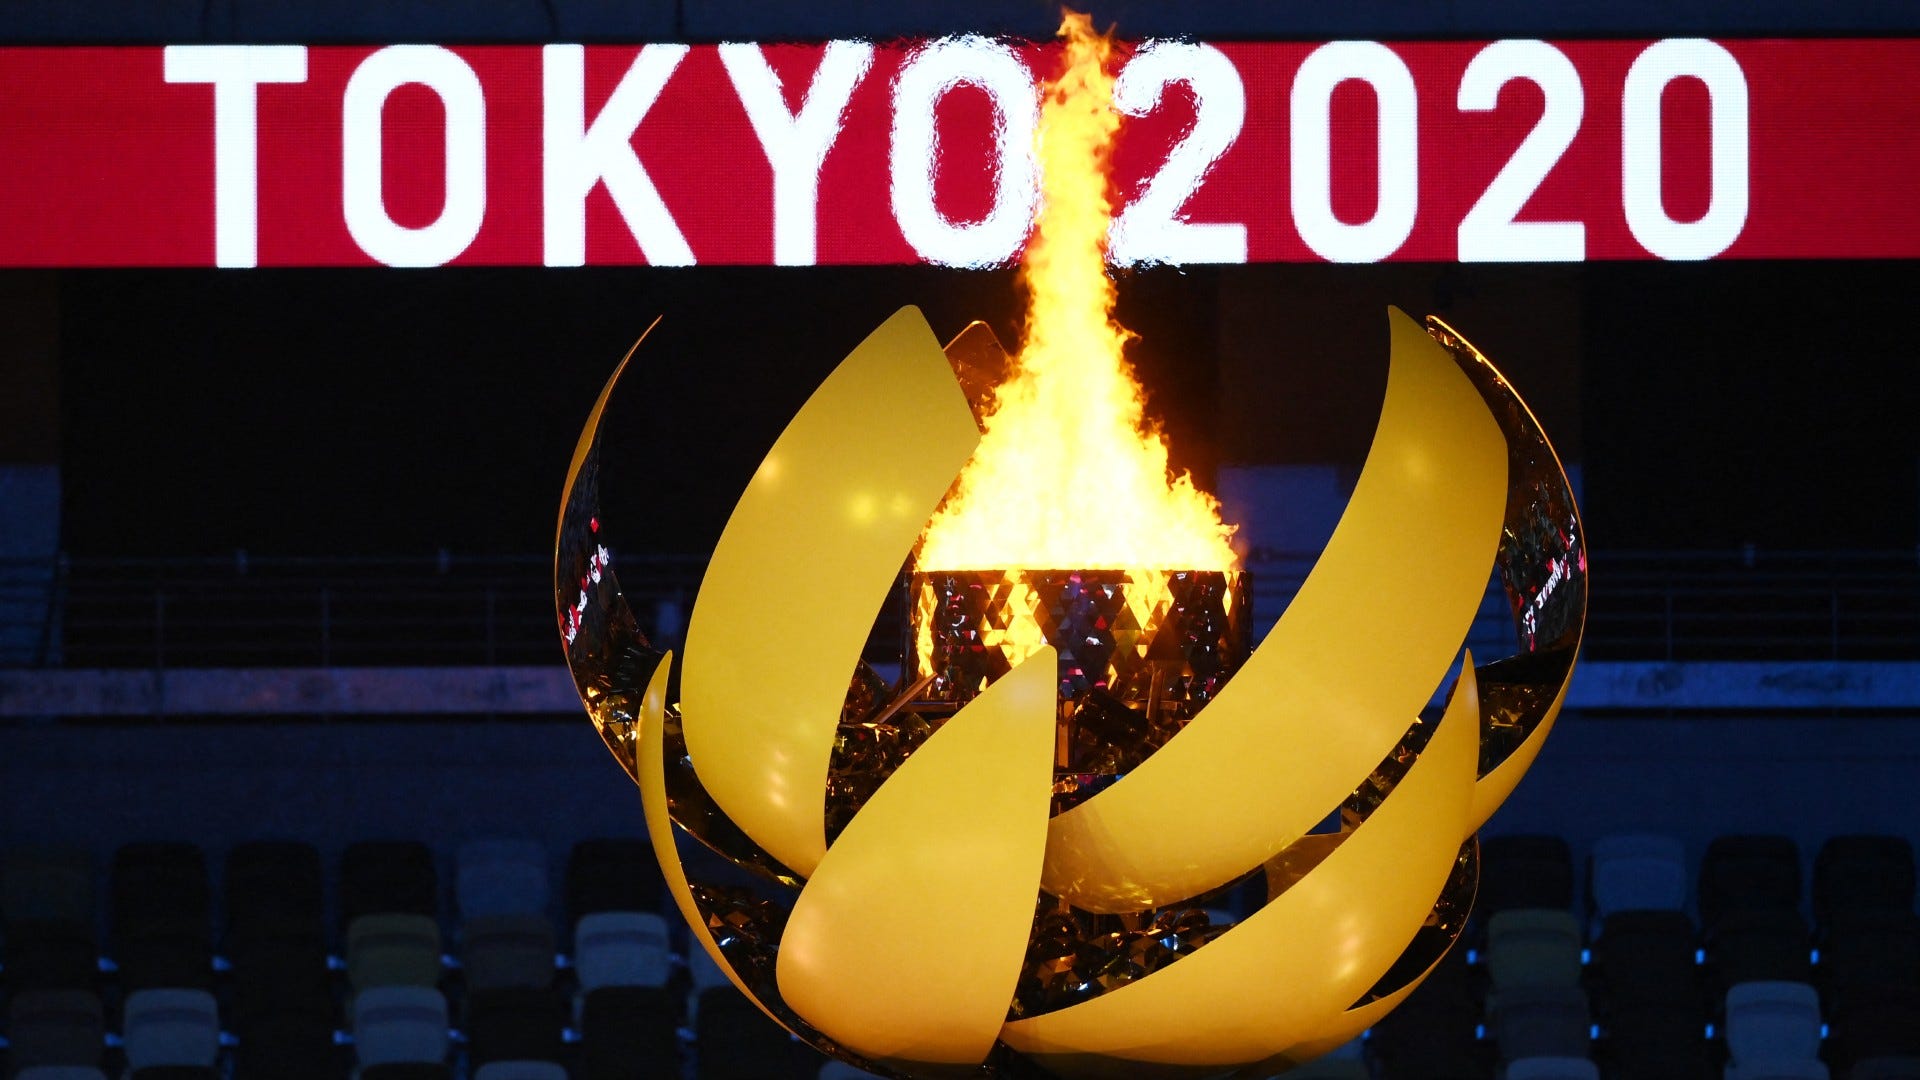 TOKYO2020オリンピックの開会式及び閉会式のセットチケット今のところ返信はありません